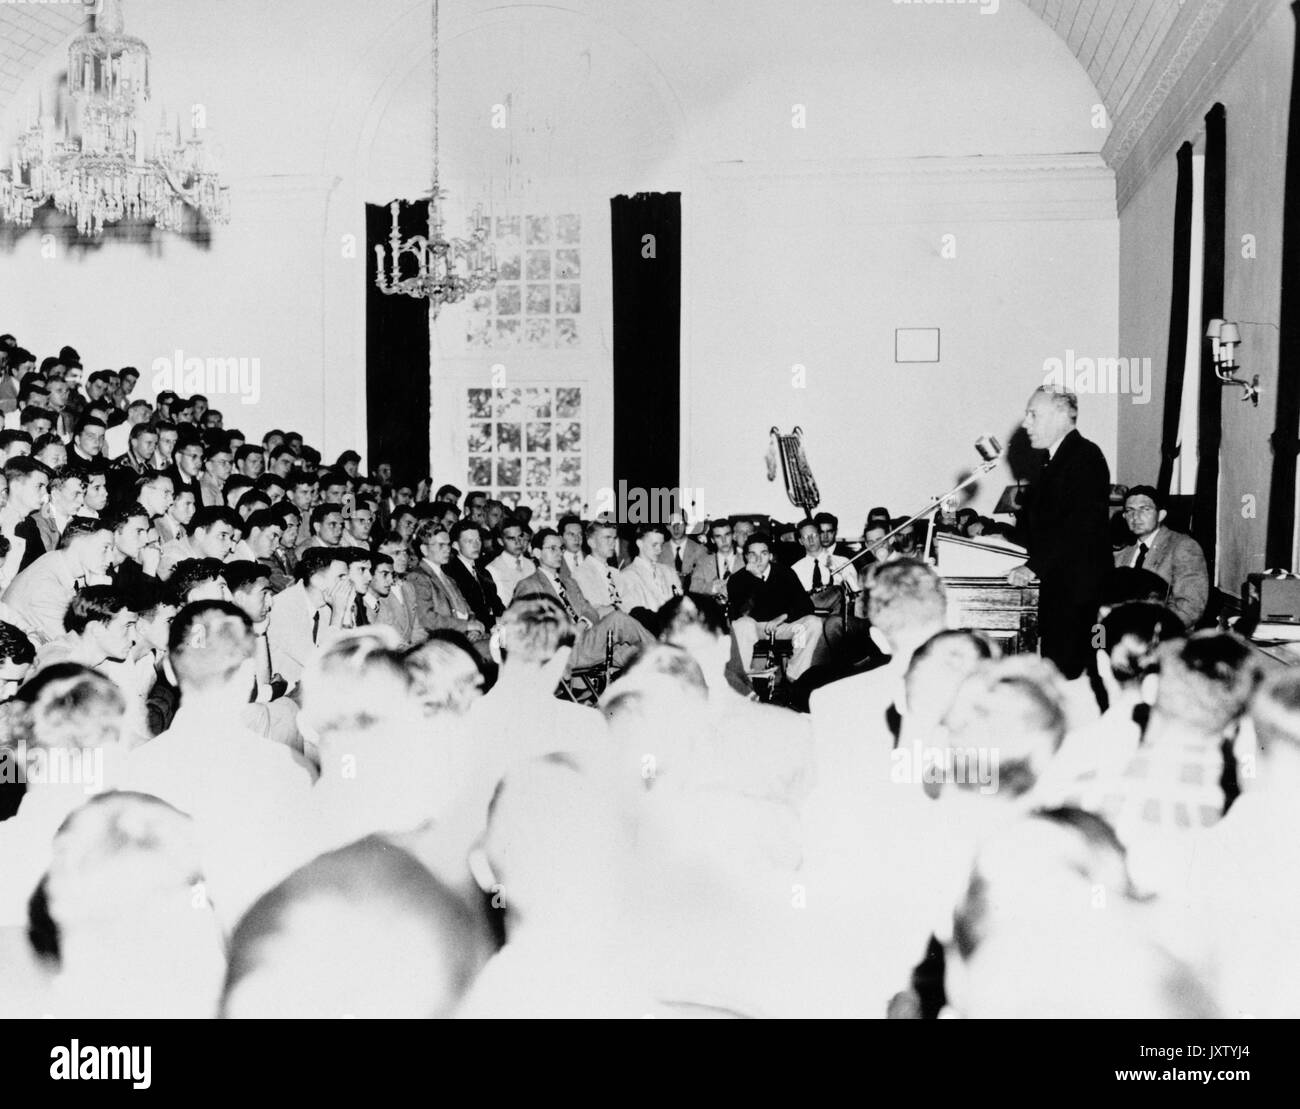 Detlev bronk, Wulf, 1953 Photographies de classe de l'intérieur faisant levier hall, grand hall, à l'adressage bronk podium de classe de 1953, 1949. Banque D'Images